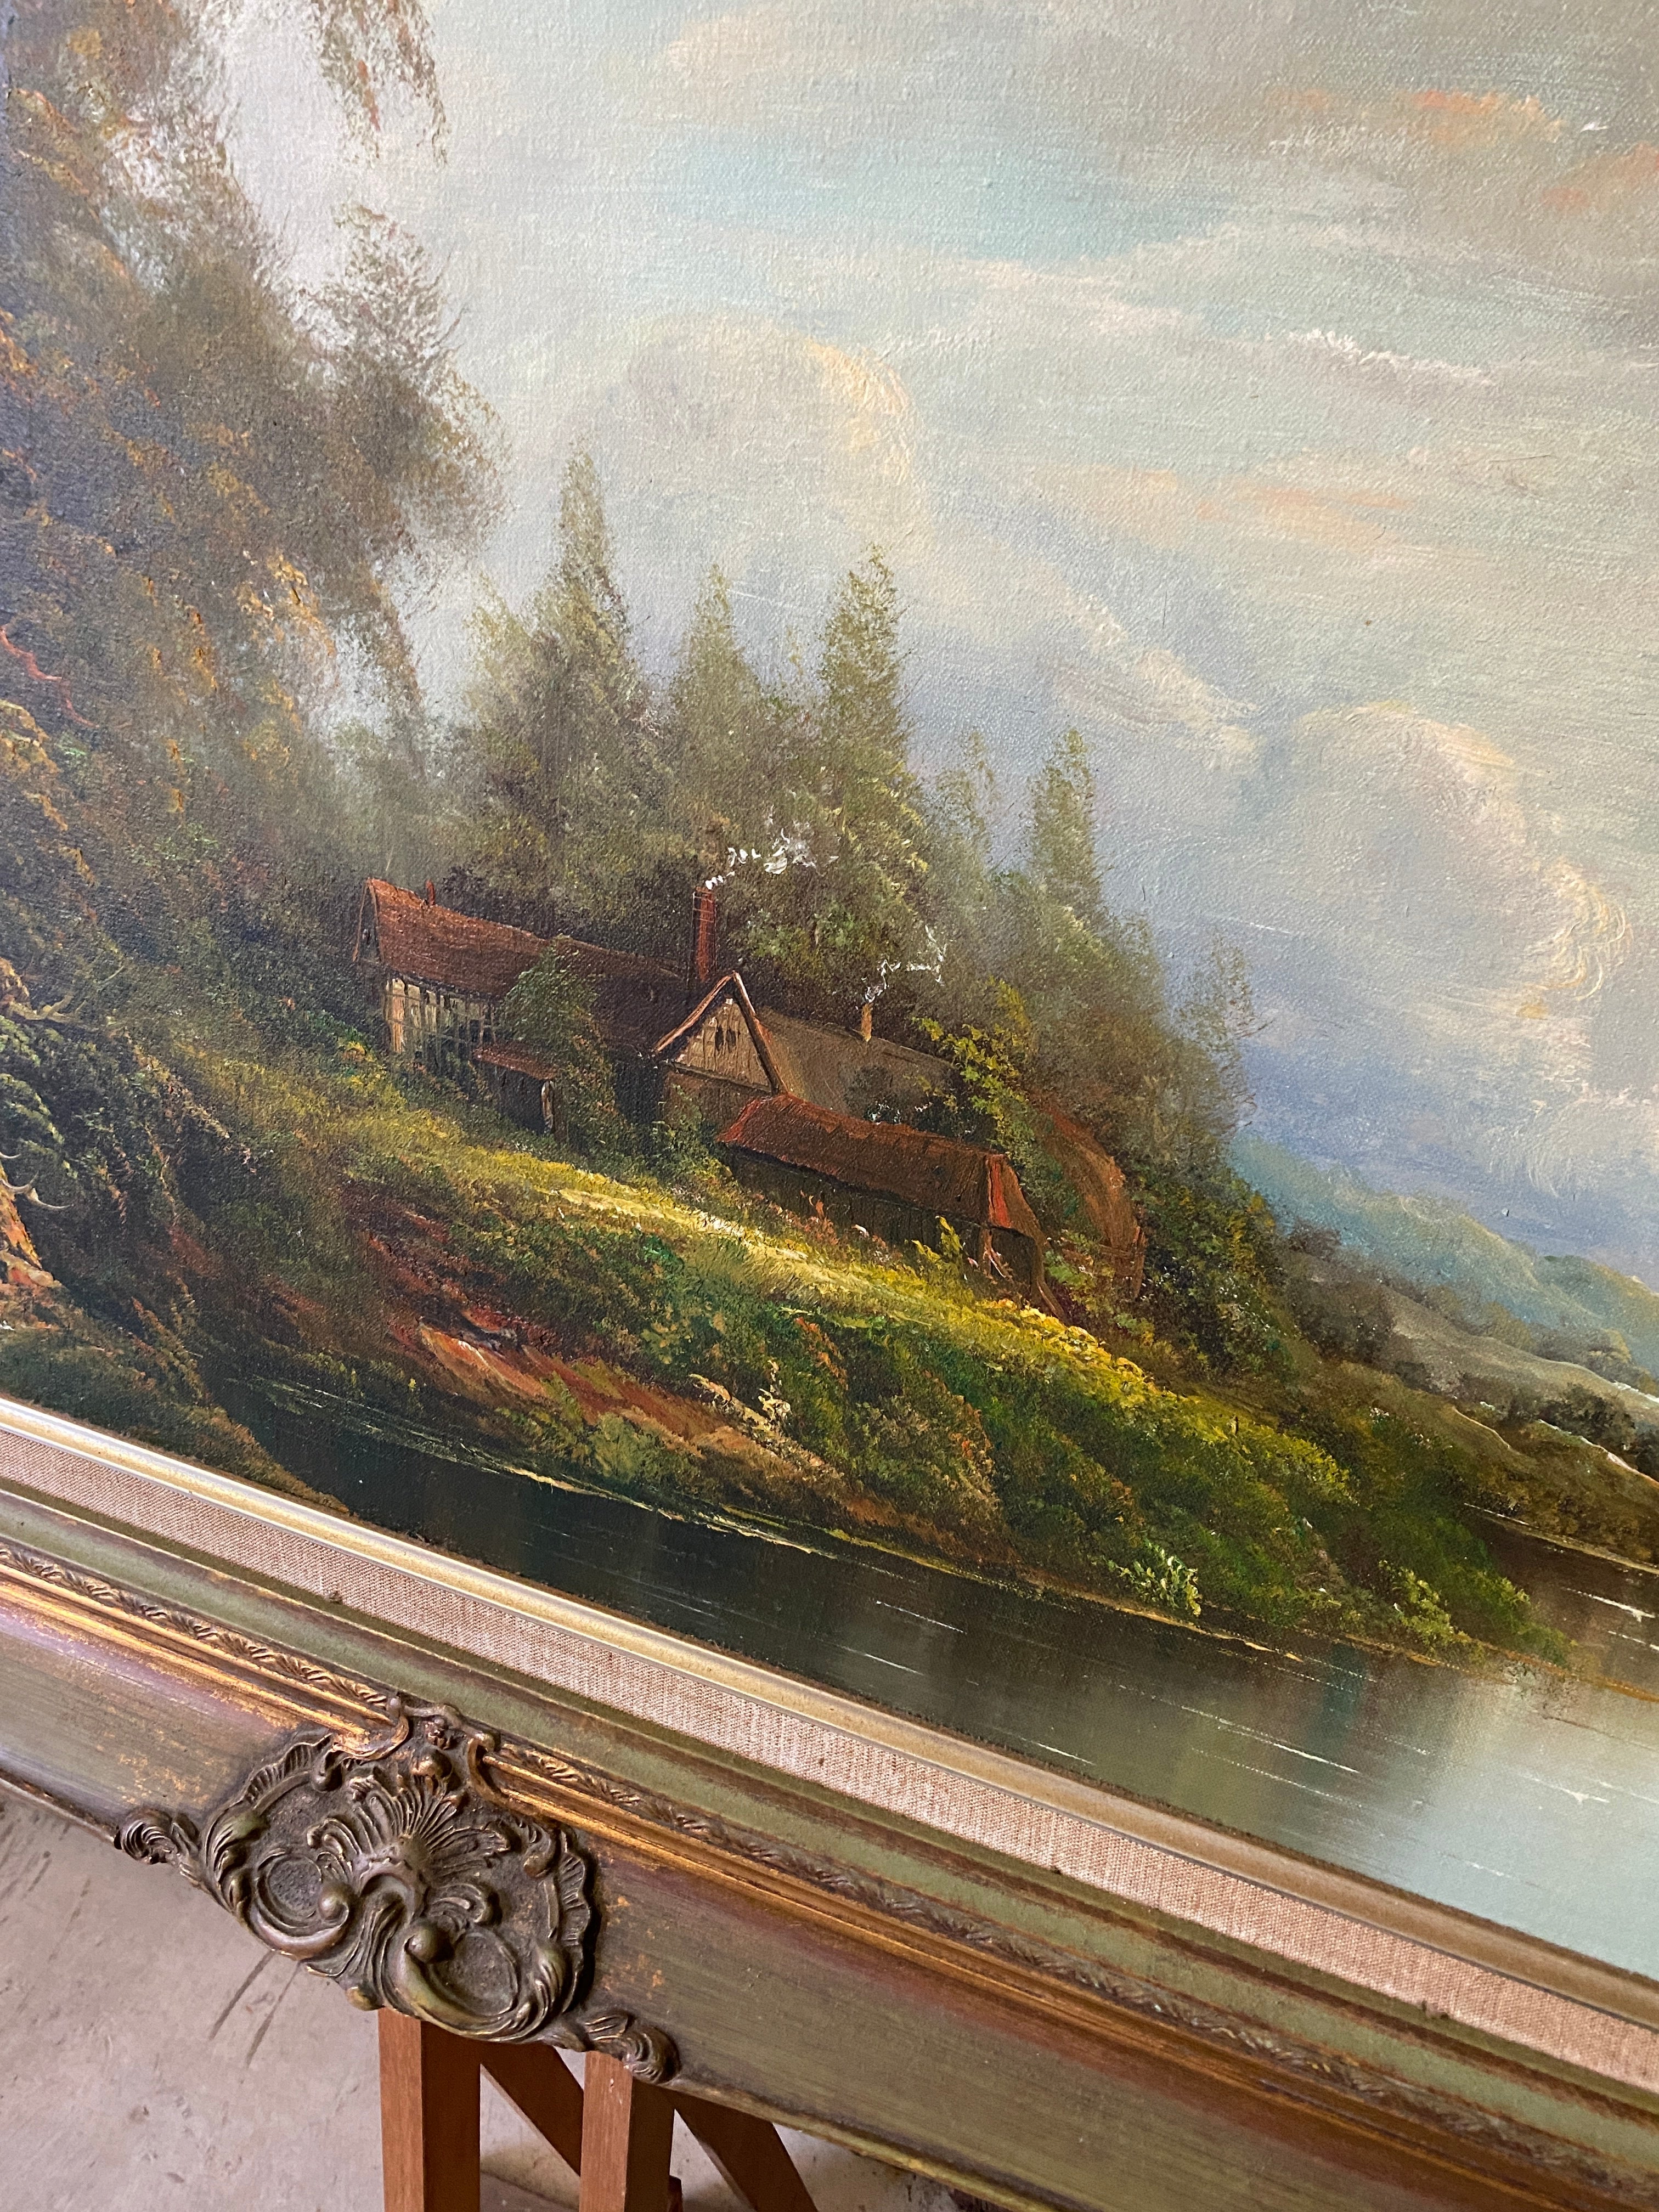 Vintage Creek Landscape Oil Artwork